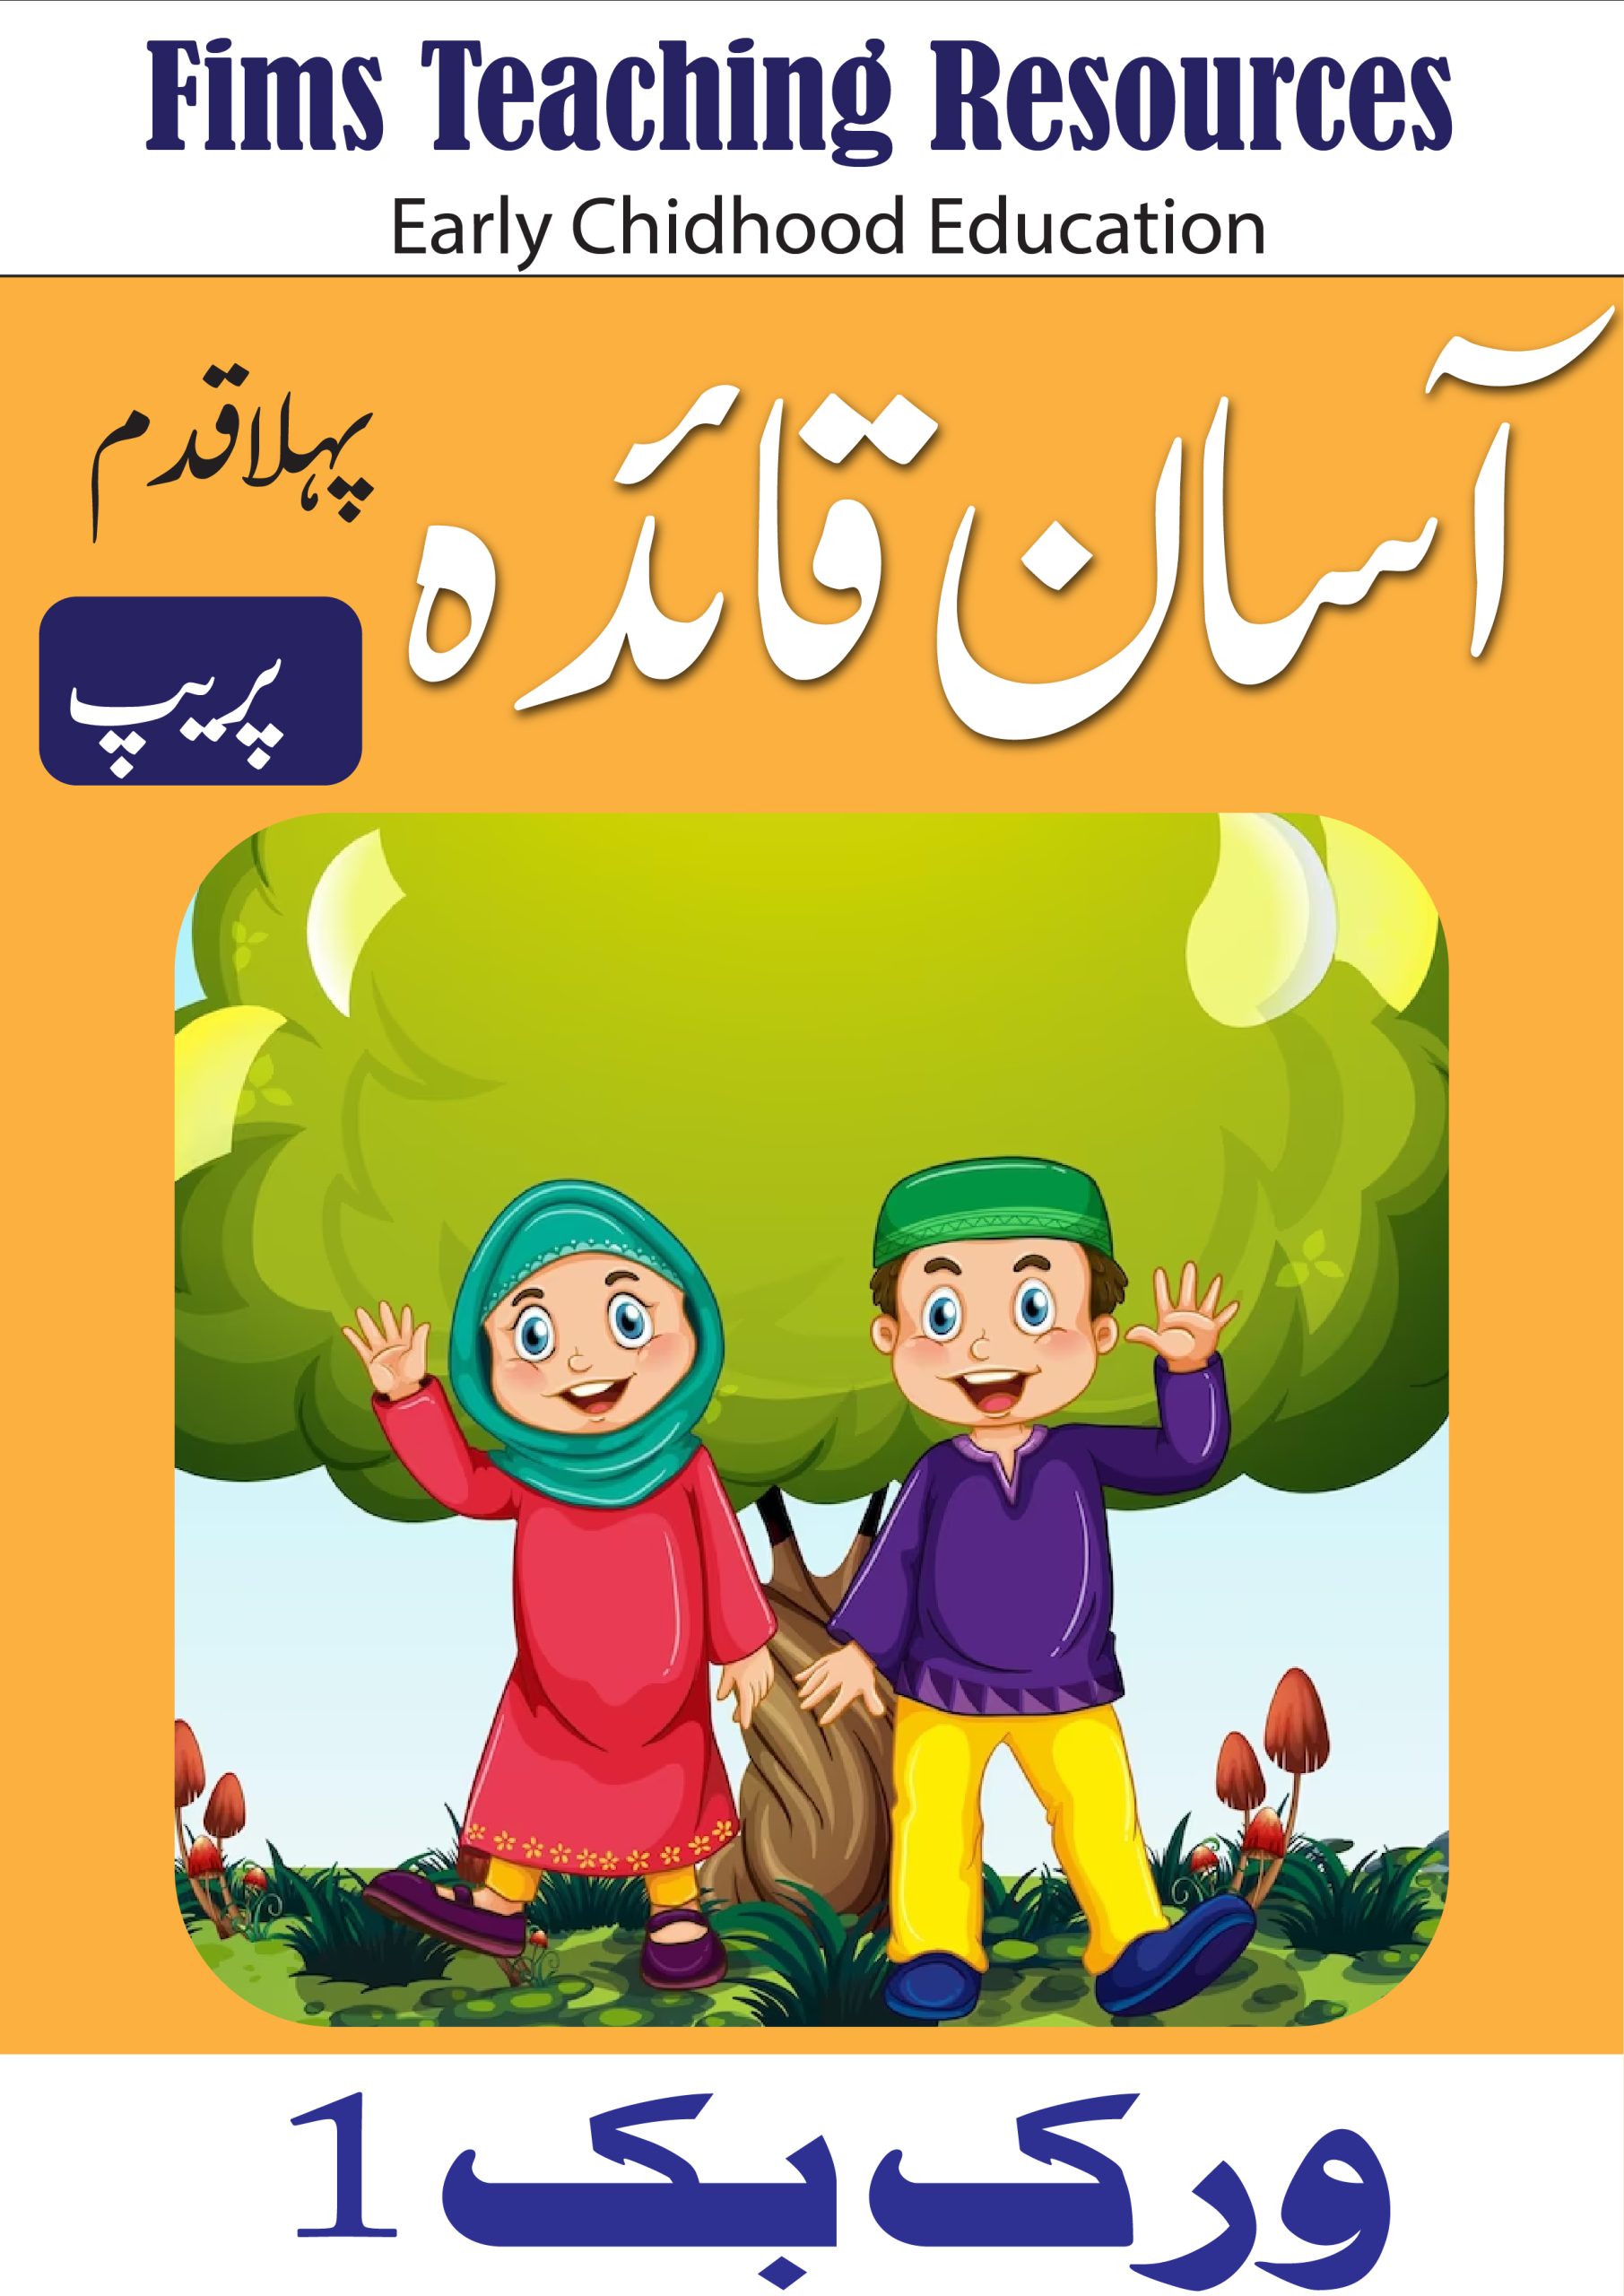 urdu-worksheets-for-k-g-prep-pack-1-kindergarten-free-printable